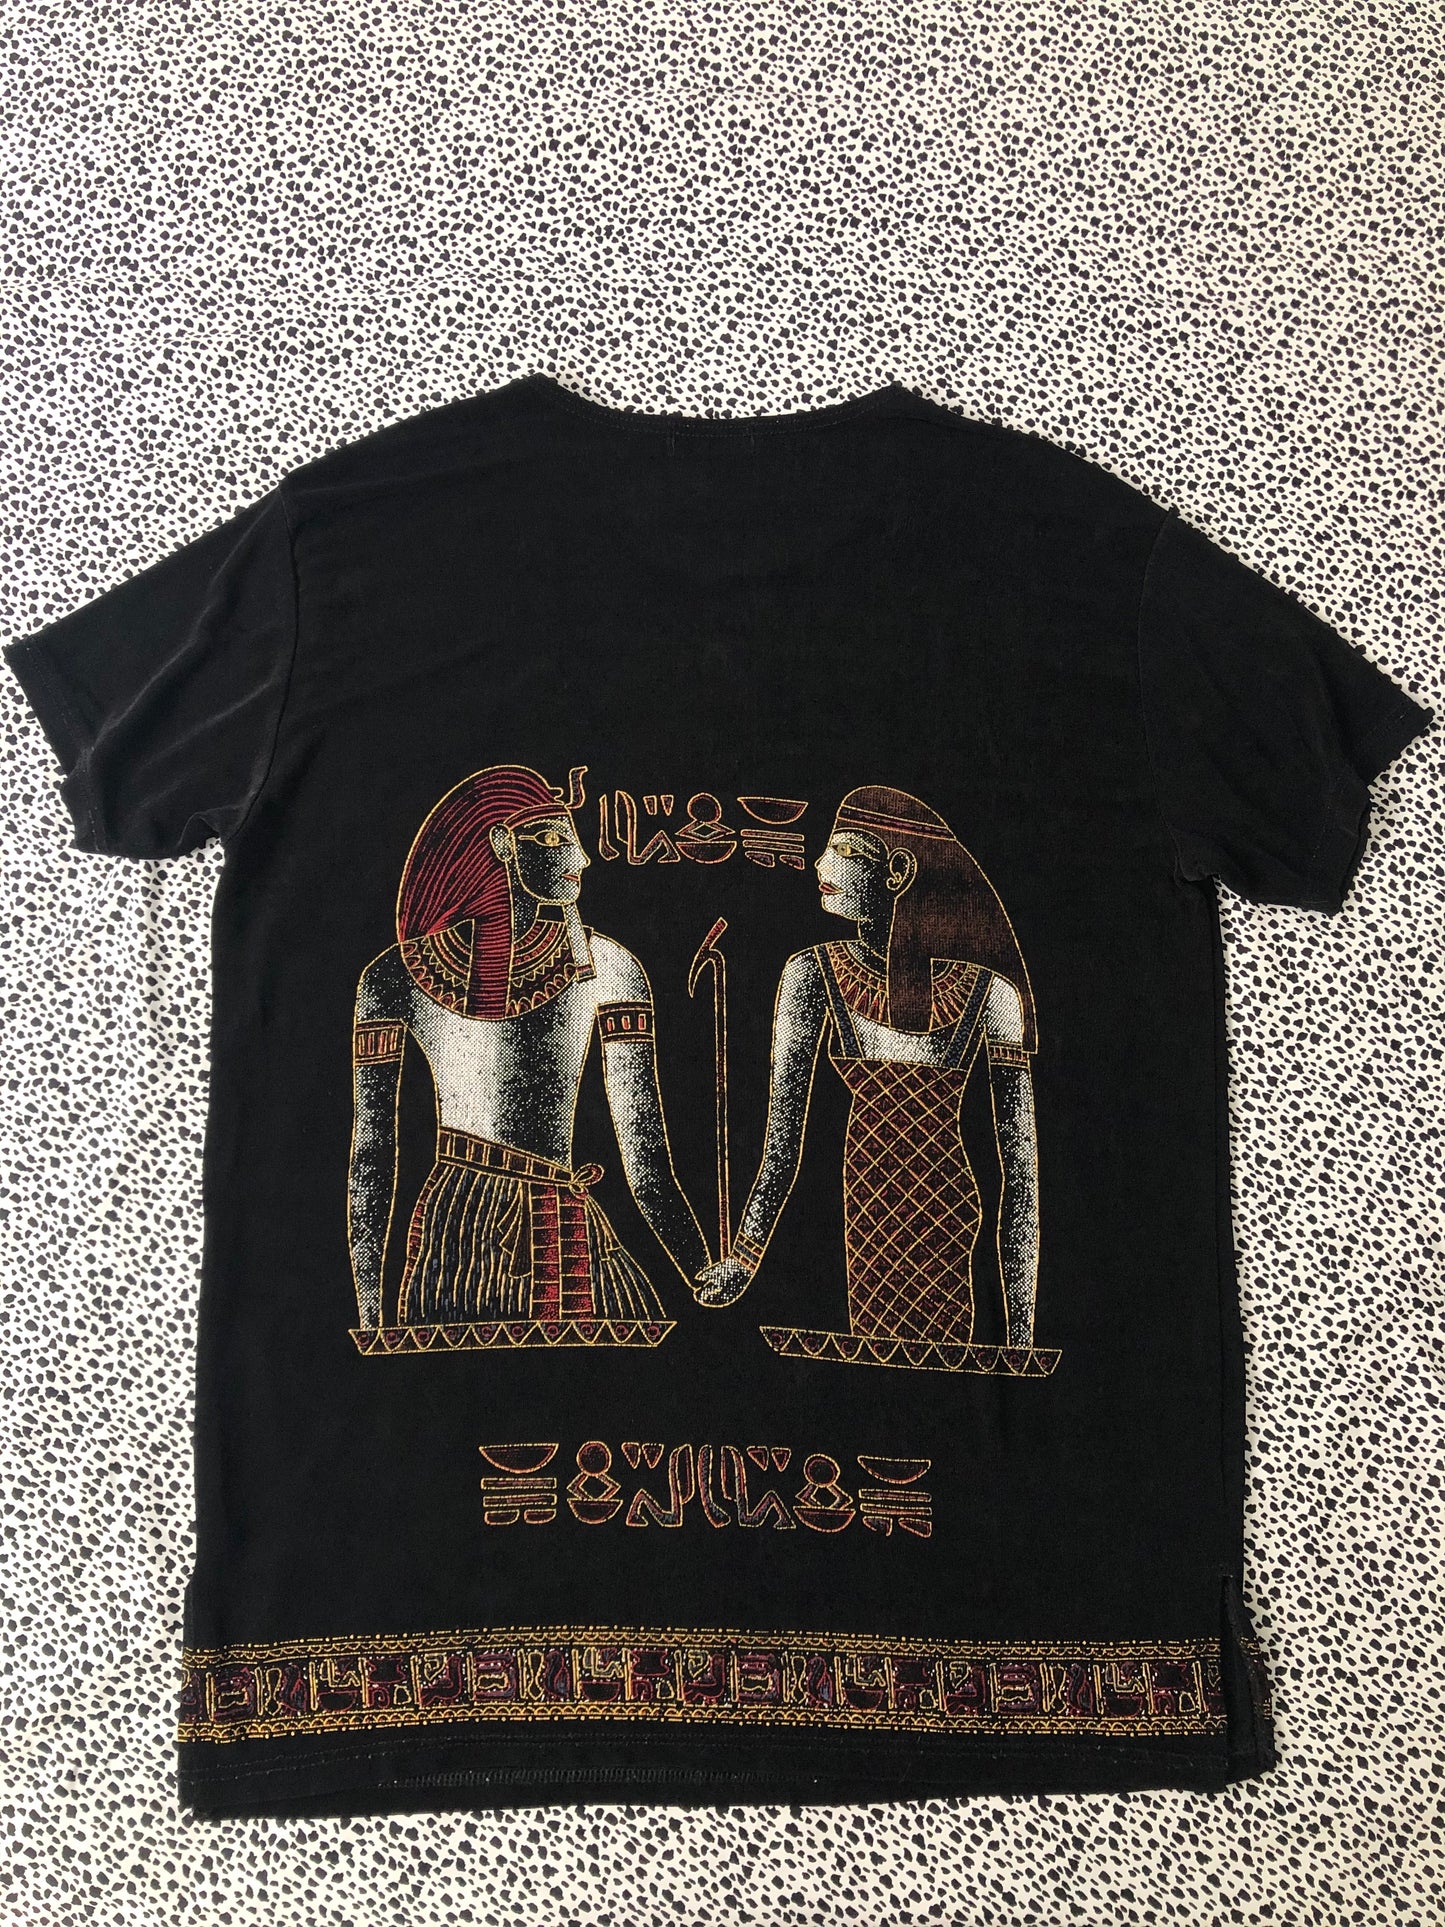 egyptian shirt